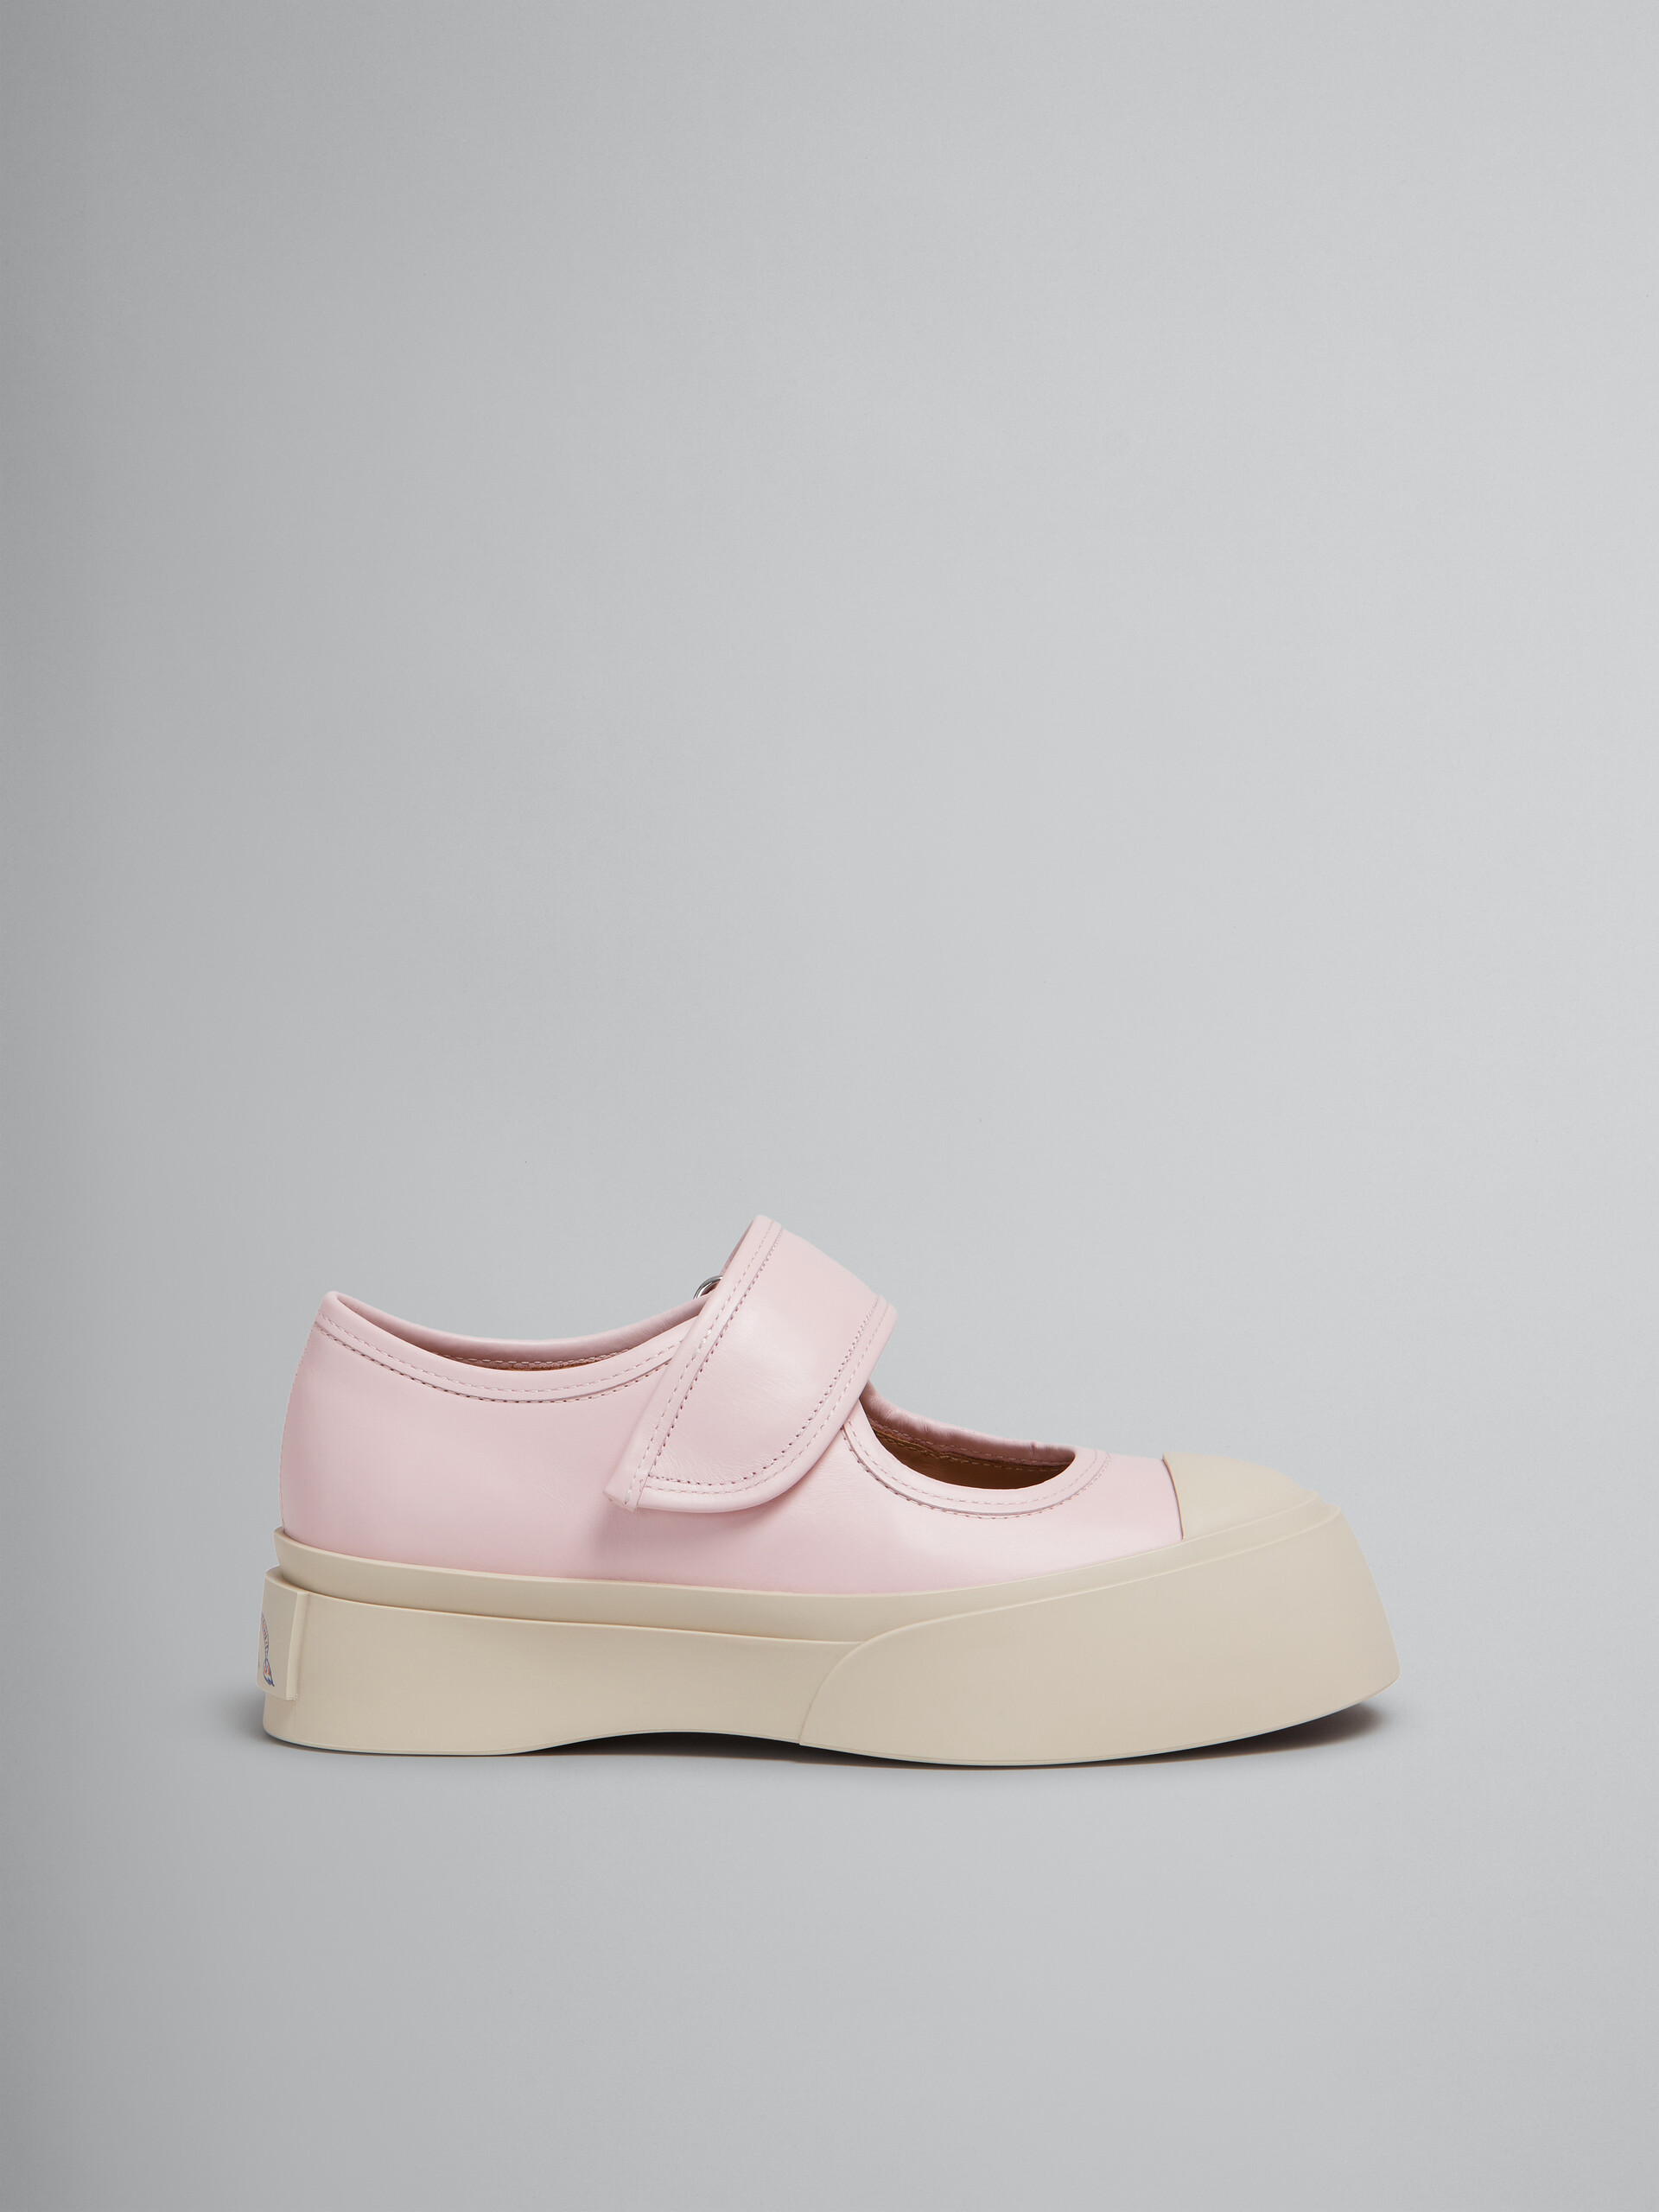 Zapatilla Mary Jane de piel de napa rosa claro - Sneakers - Image 1